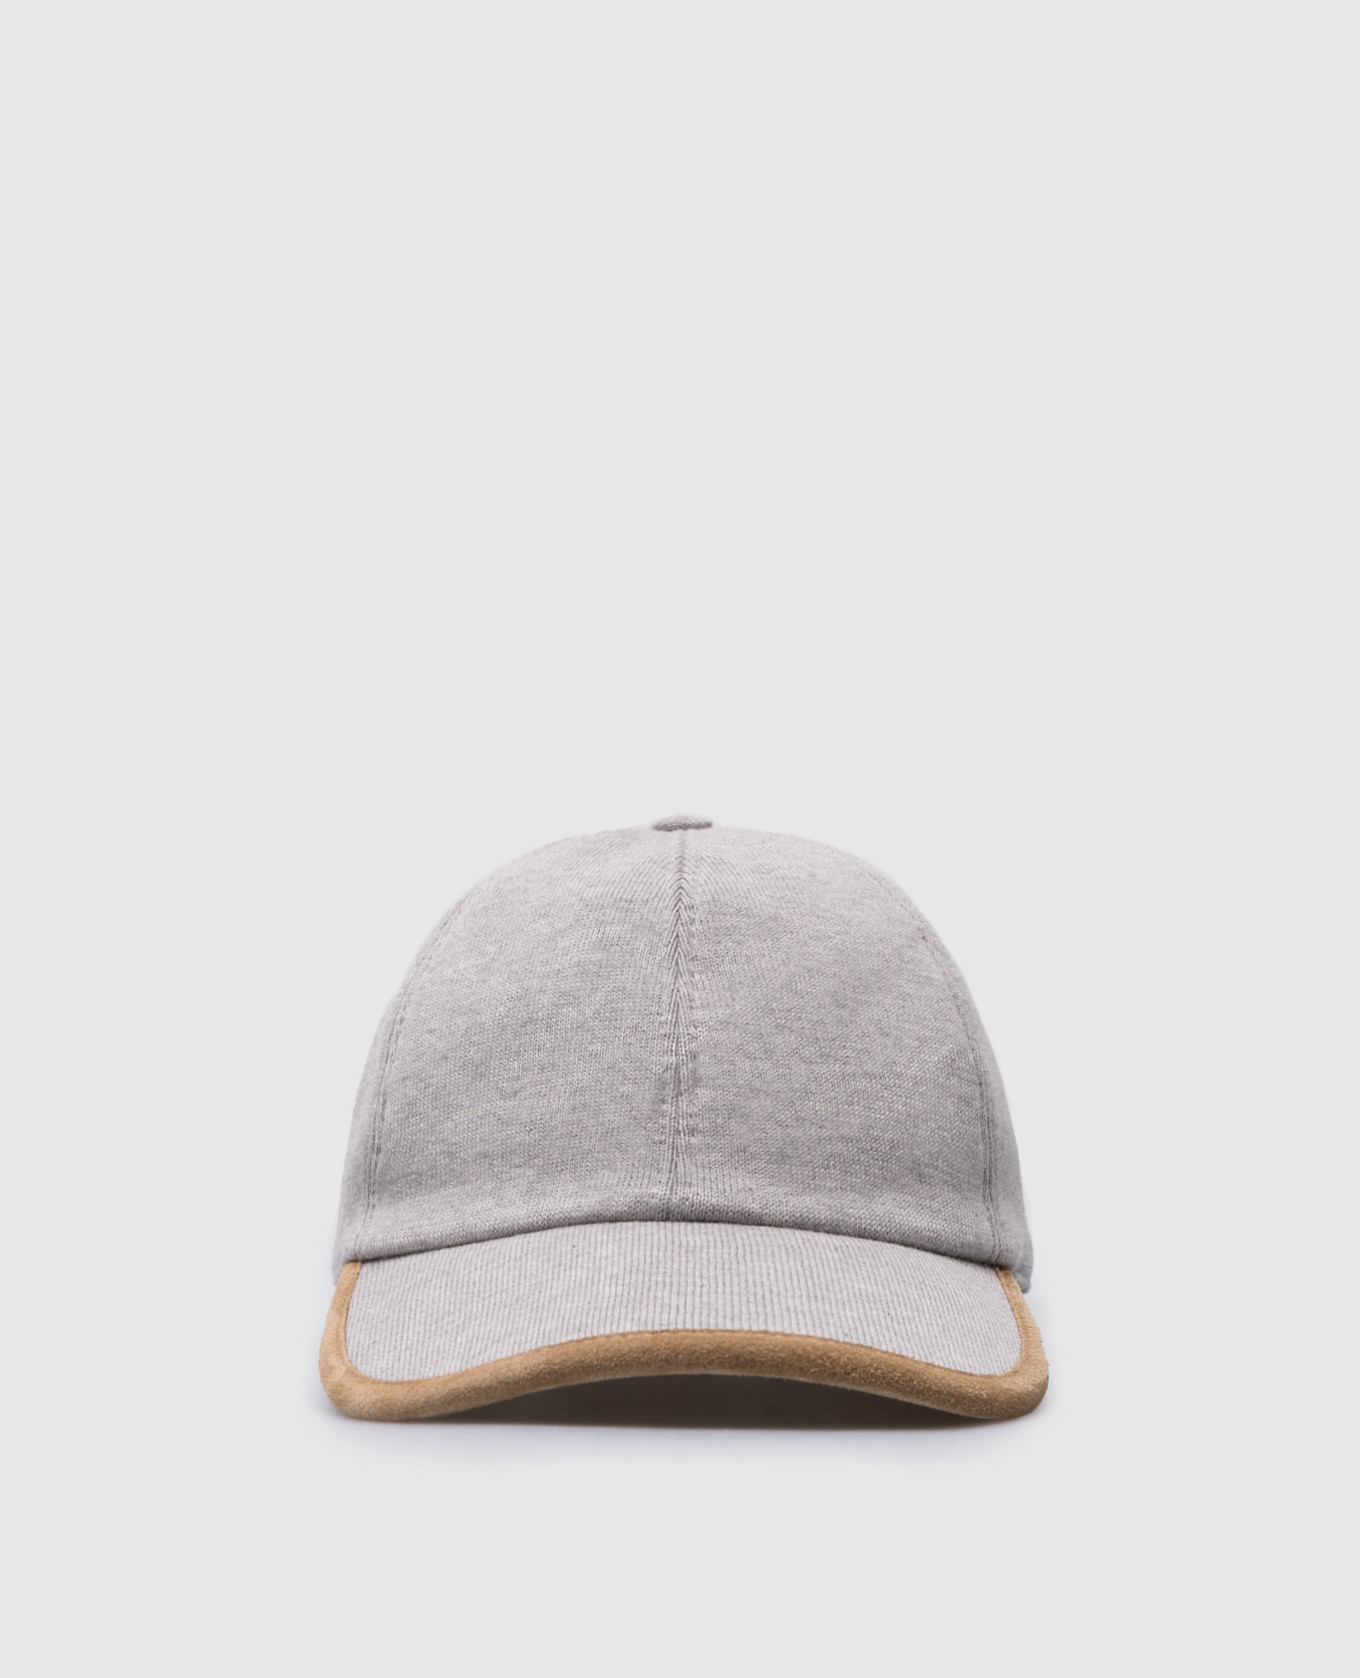 Gray cap with metal logo